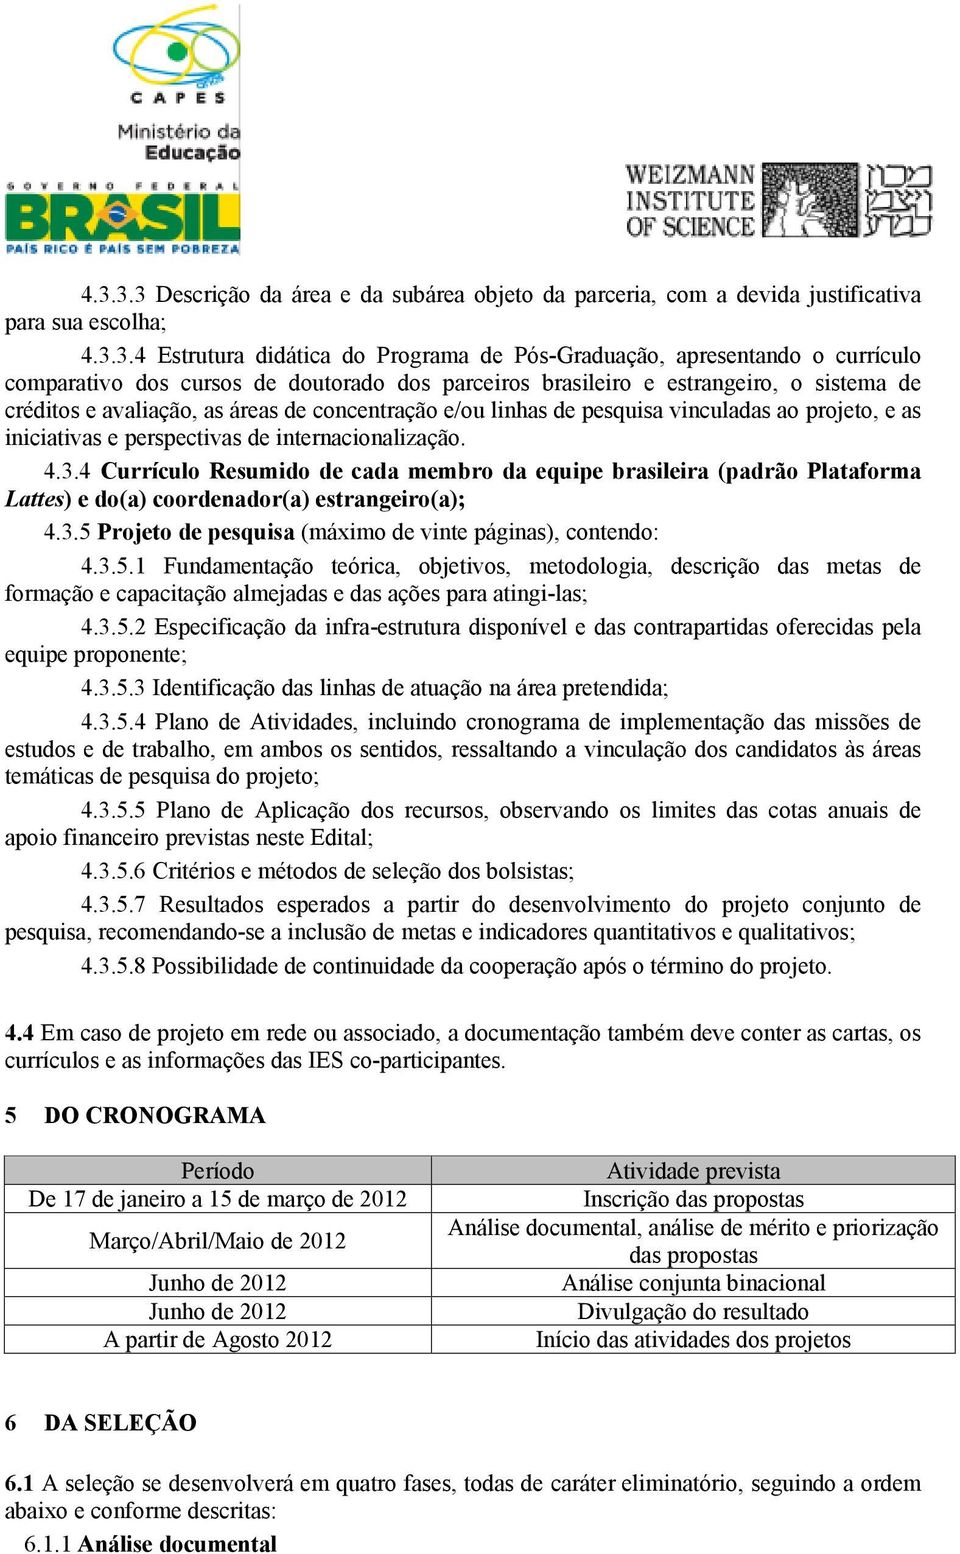 perspectivas de internacionalização. 4.3.4 Currículo Resumido de cada membro da equipe brasileira (padrão Plataforma Lattes) e do(a) coordenador(a) estrangeiro(a); 4.3.5 Projeto de pesquisa (máximo de vinte páginas), contendo: 4.